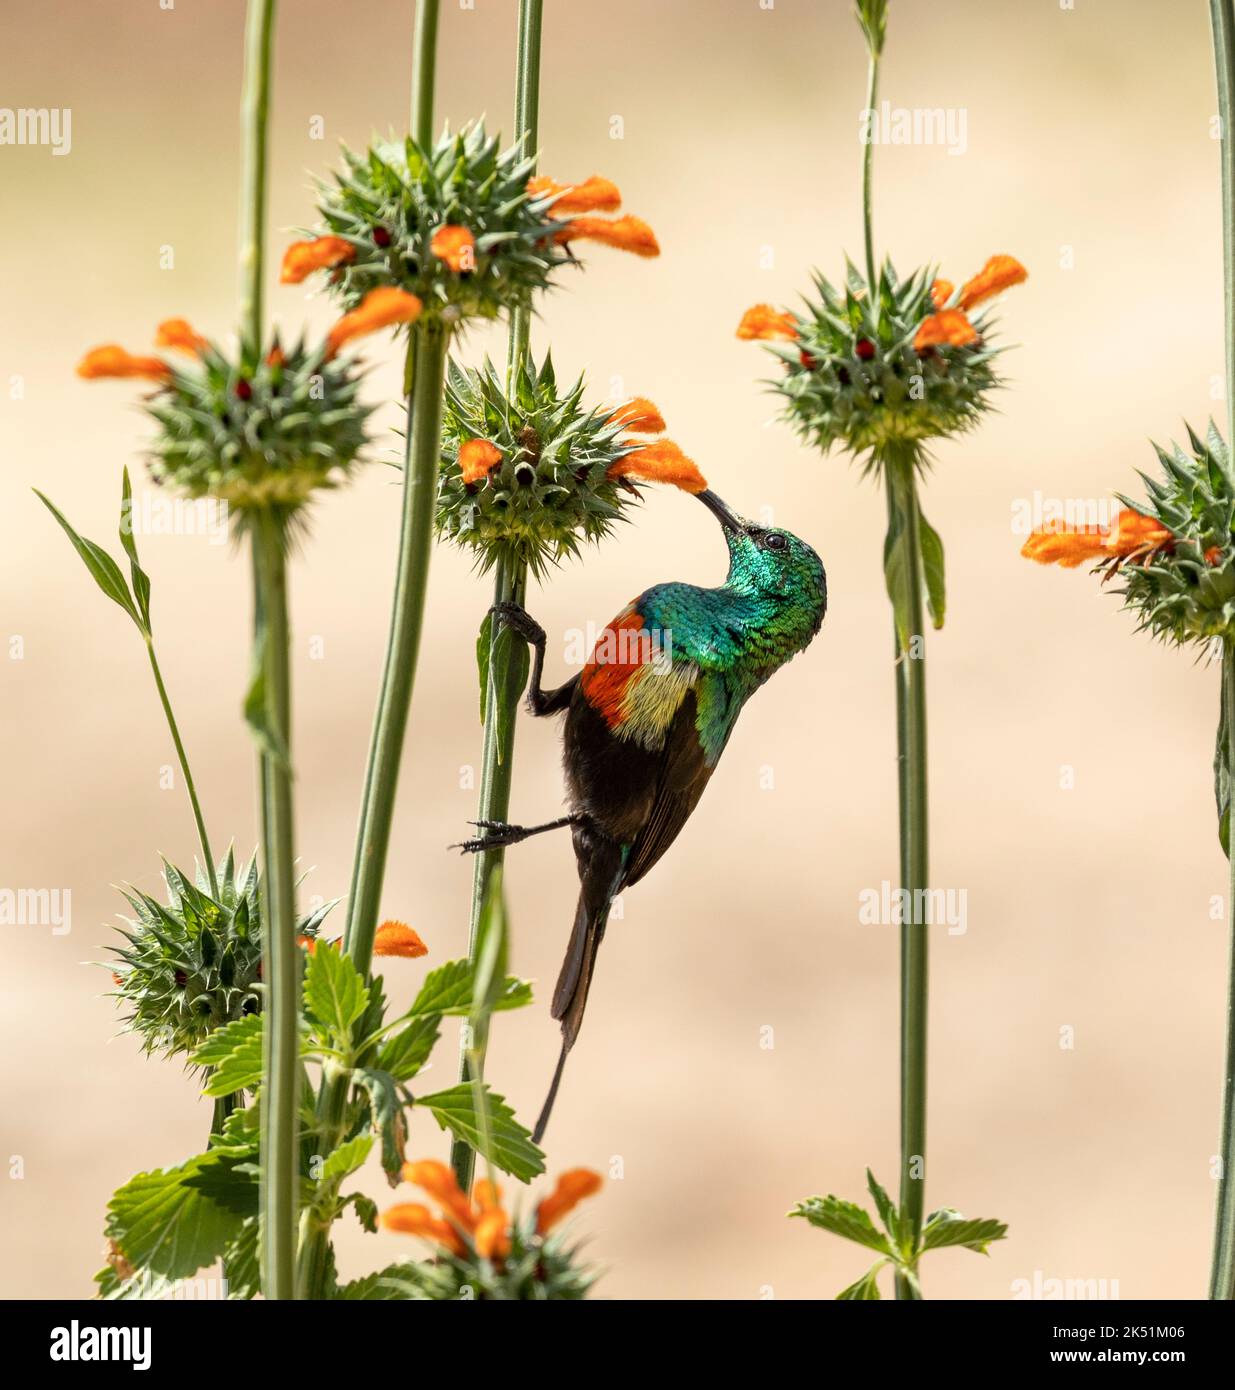 Der männliche schöne Sonnenvögel ist während der Brutsaison eine lebendige Farbpalette. Sie sind regelmäßige Besucher von Blumen wie dieser Löwenpfote Stockfoto